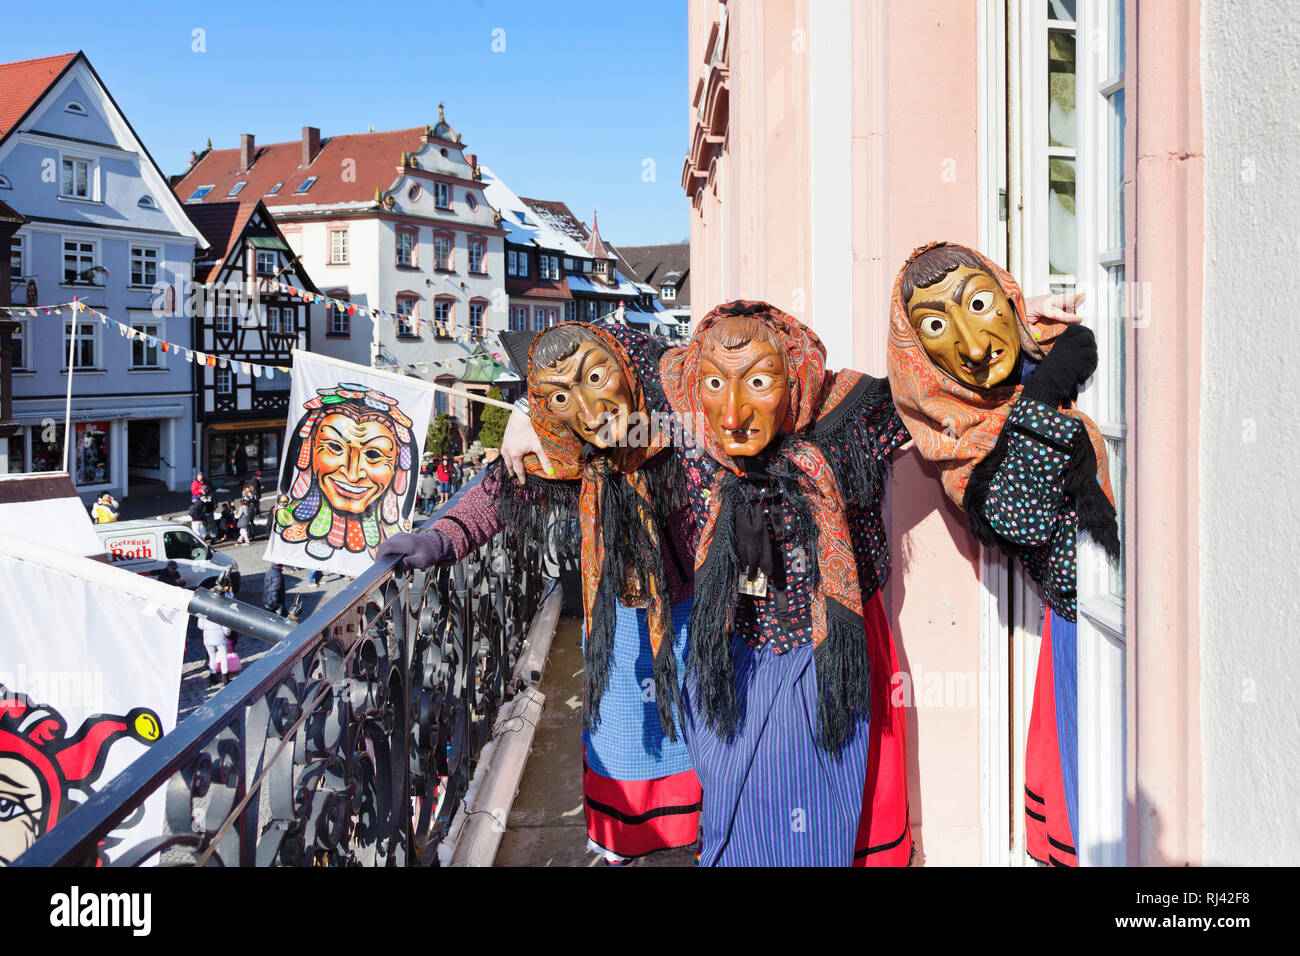 Drei Hexen auf dem Balkon des Rathauses Gengenbacher, Schwäbisch-alemannische Fastnacht, Gengenbach, Schwarzwald, Baden-Württemberg, Deutschland Foto Stock